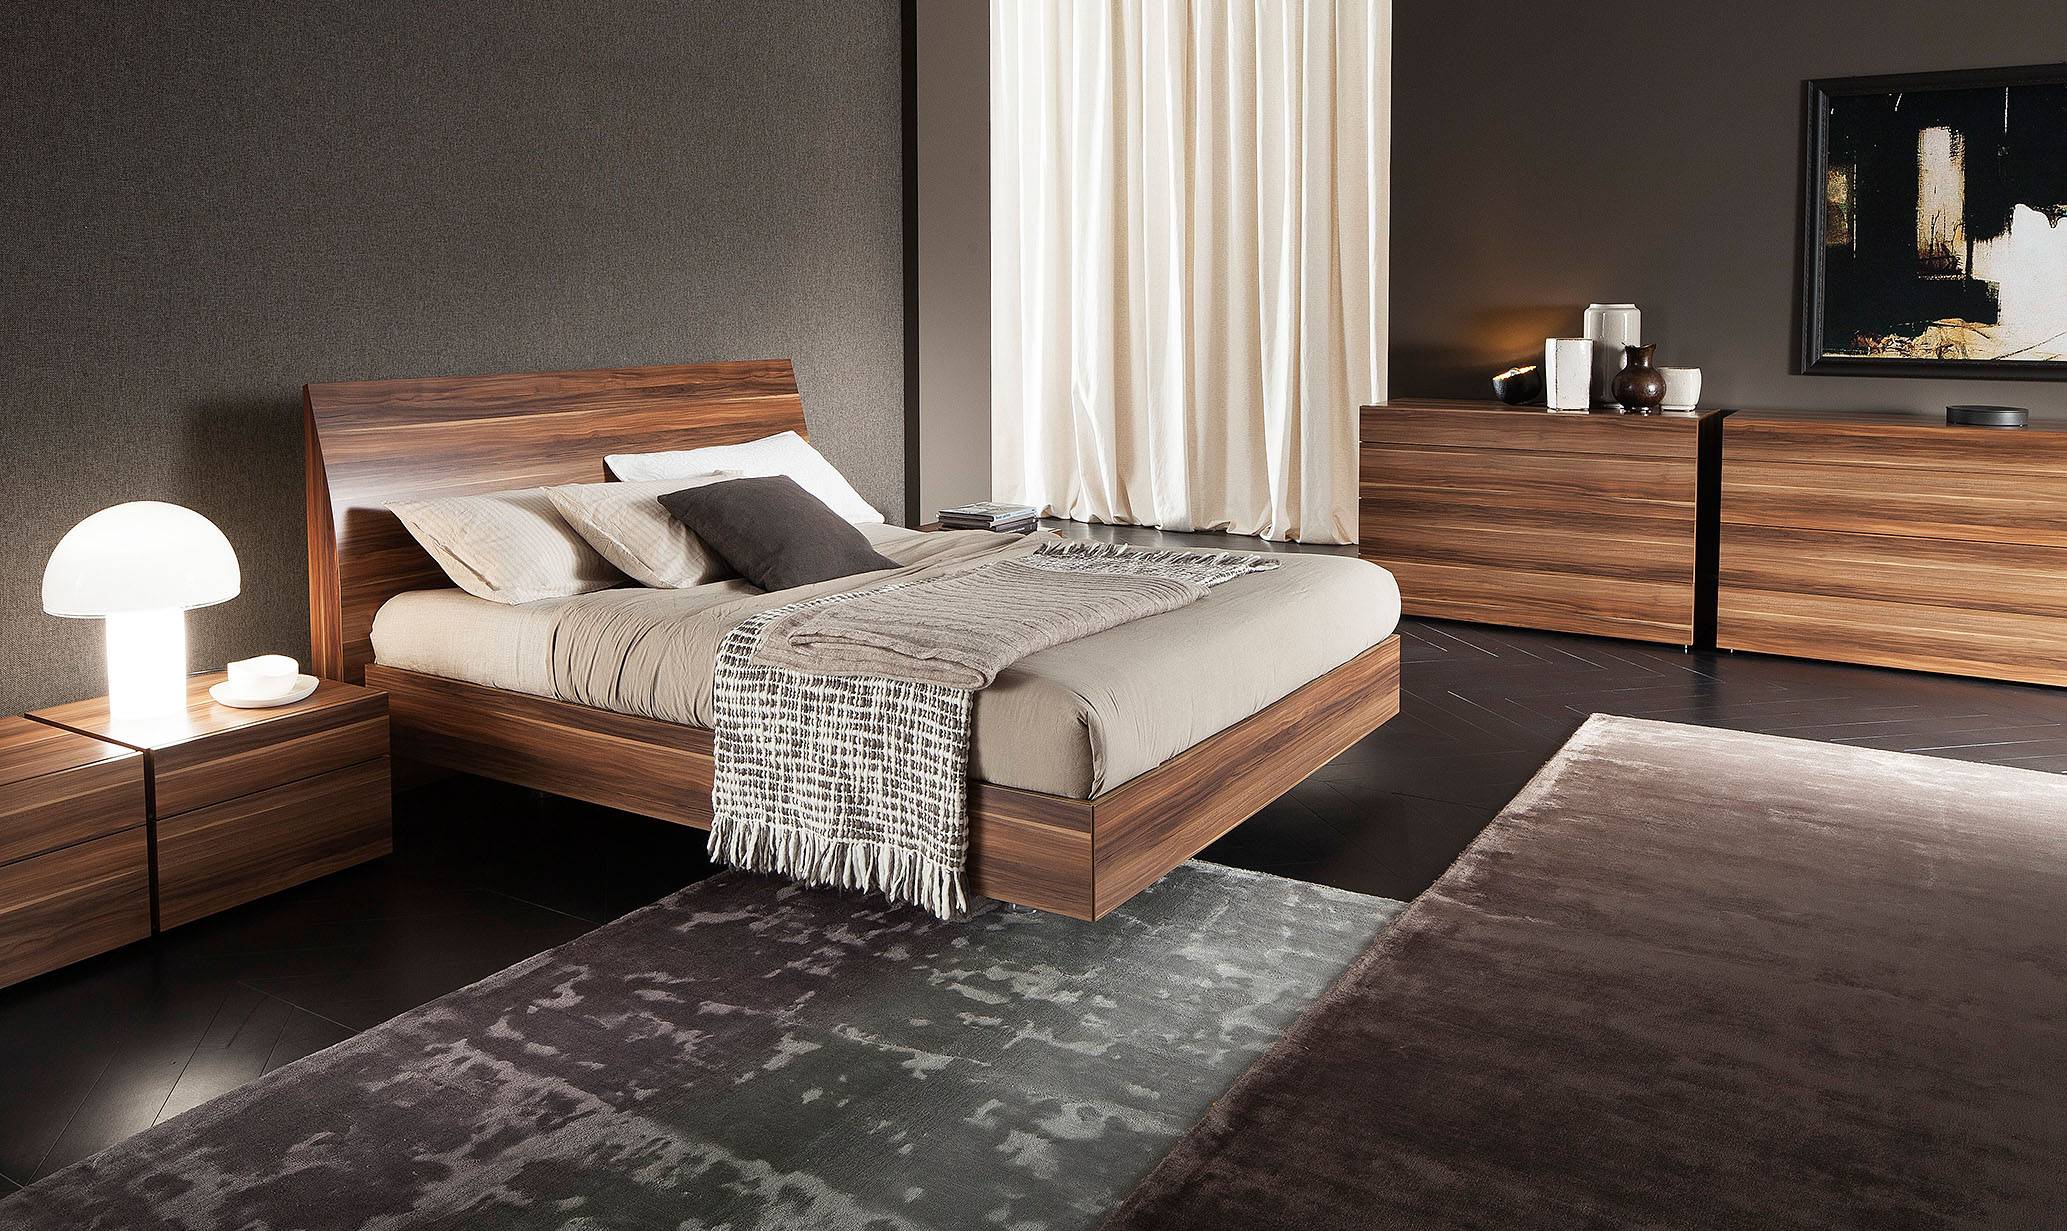 luxury wood bedroom furniture